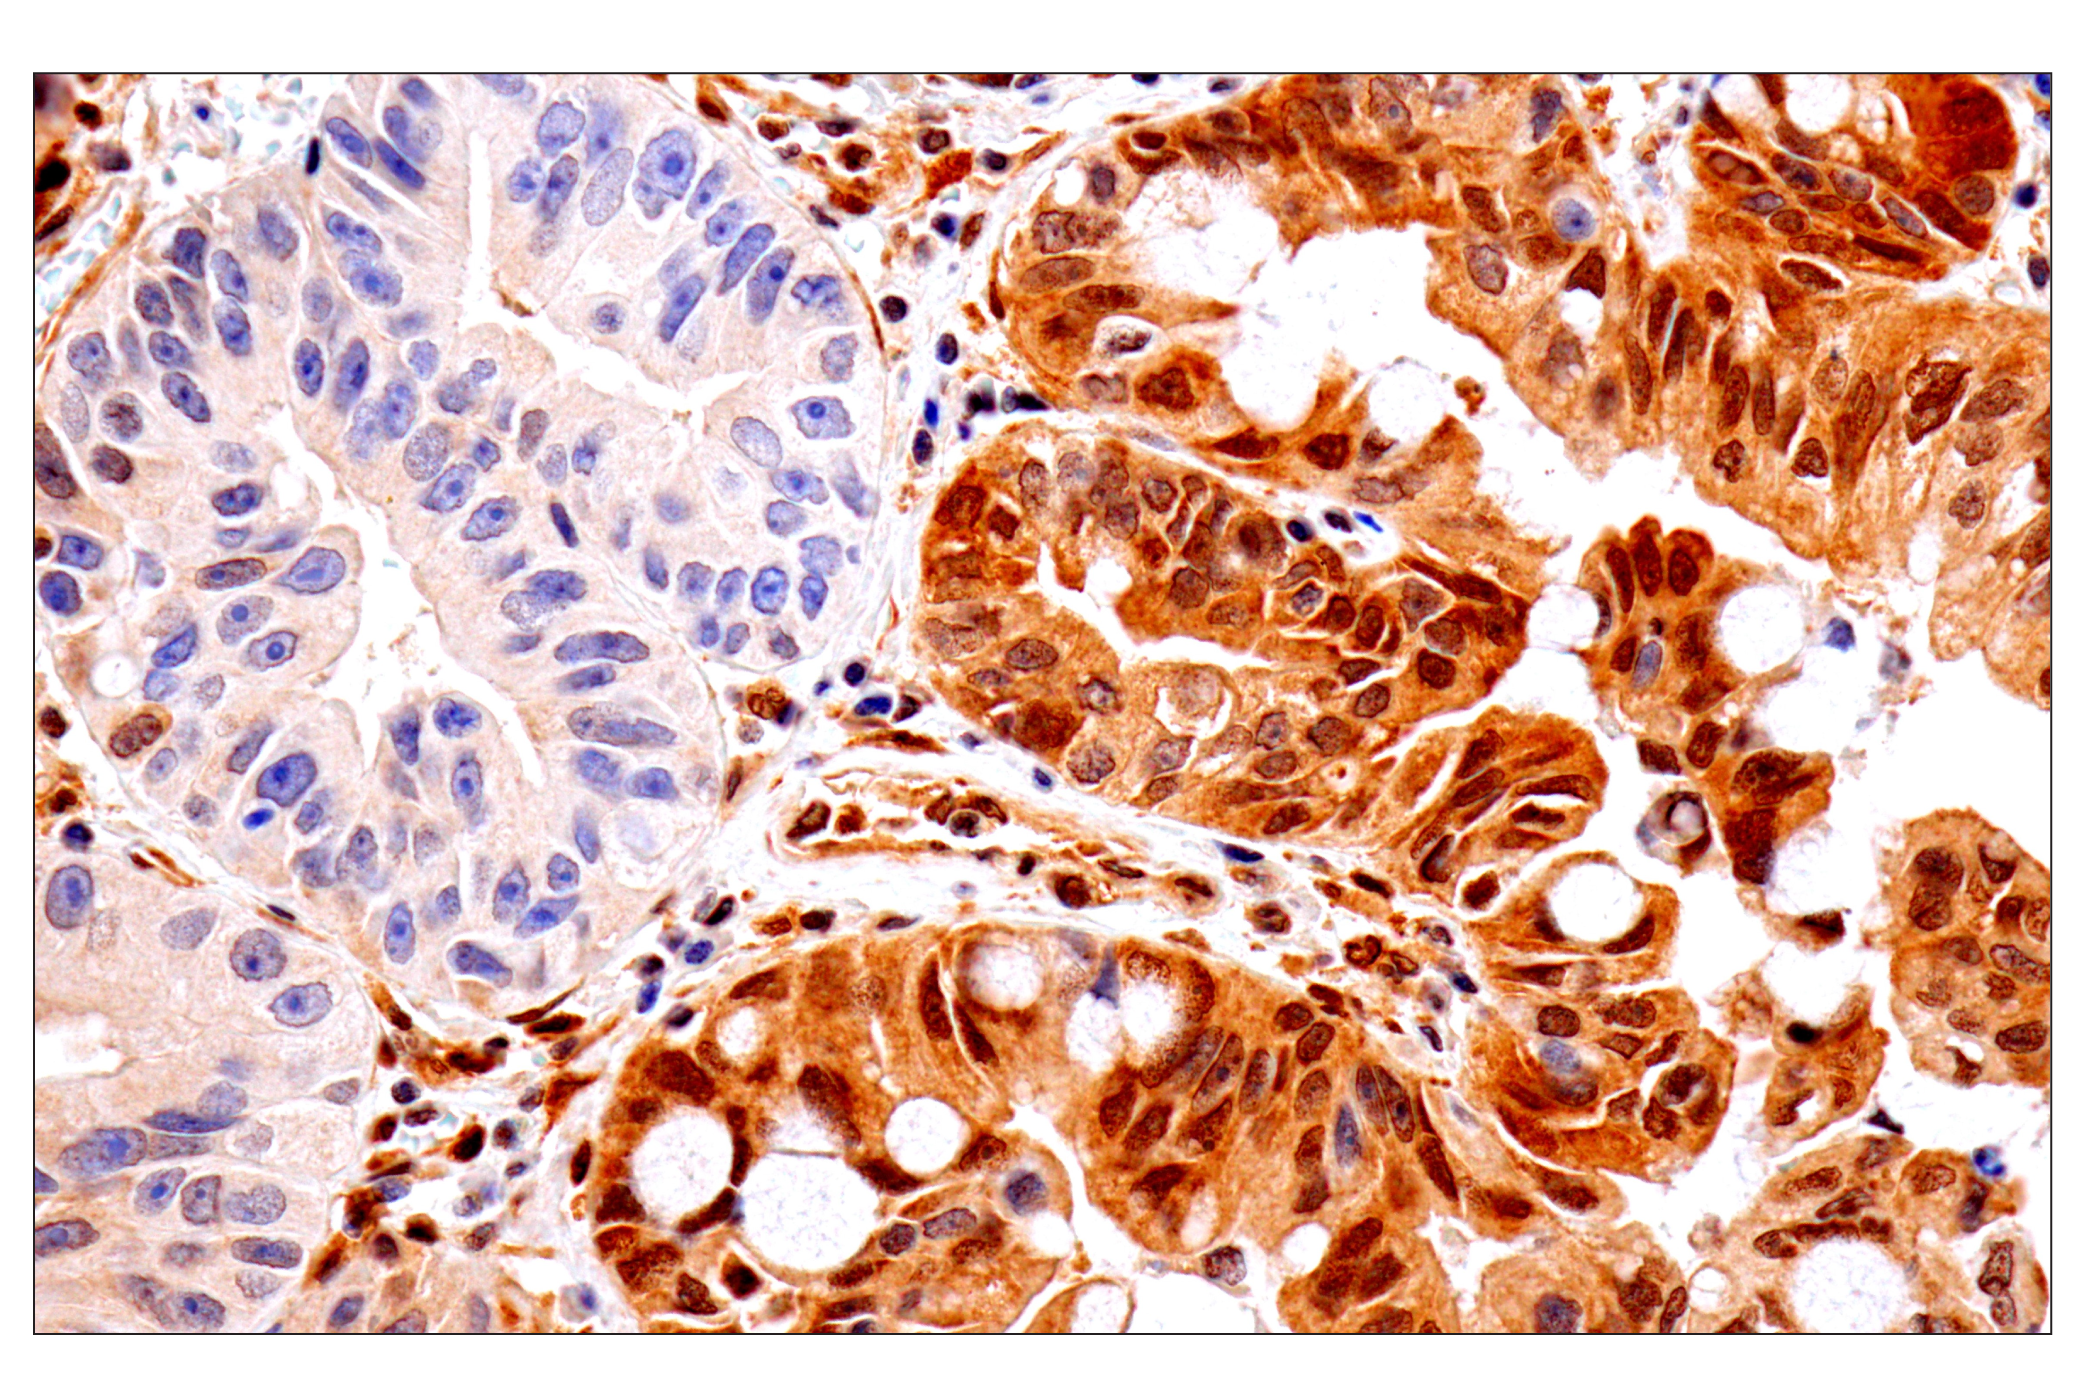  Image 22: Oncogene and Tumor Suppressor Antibody Sampler Kit